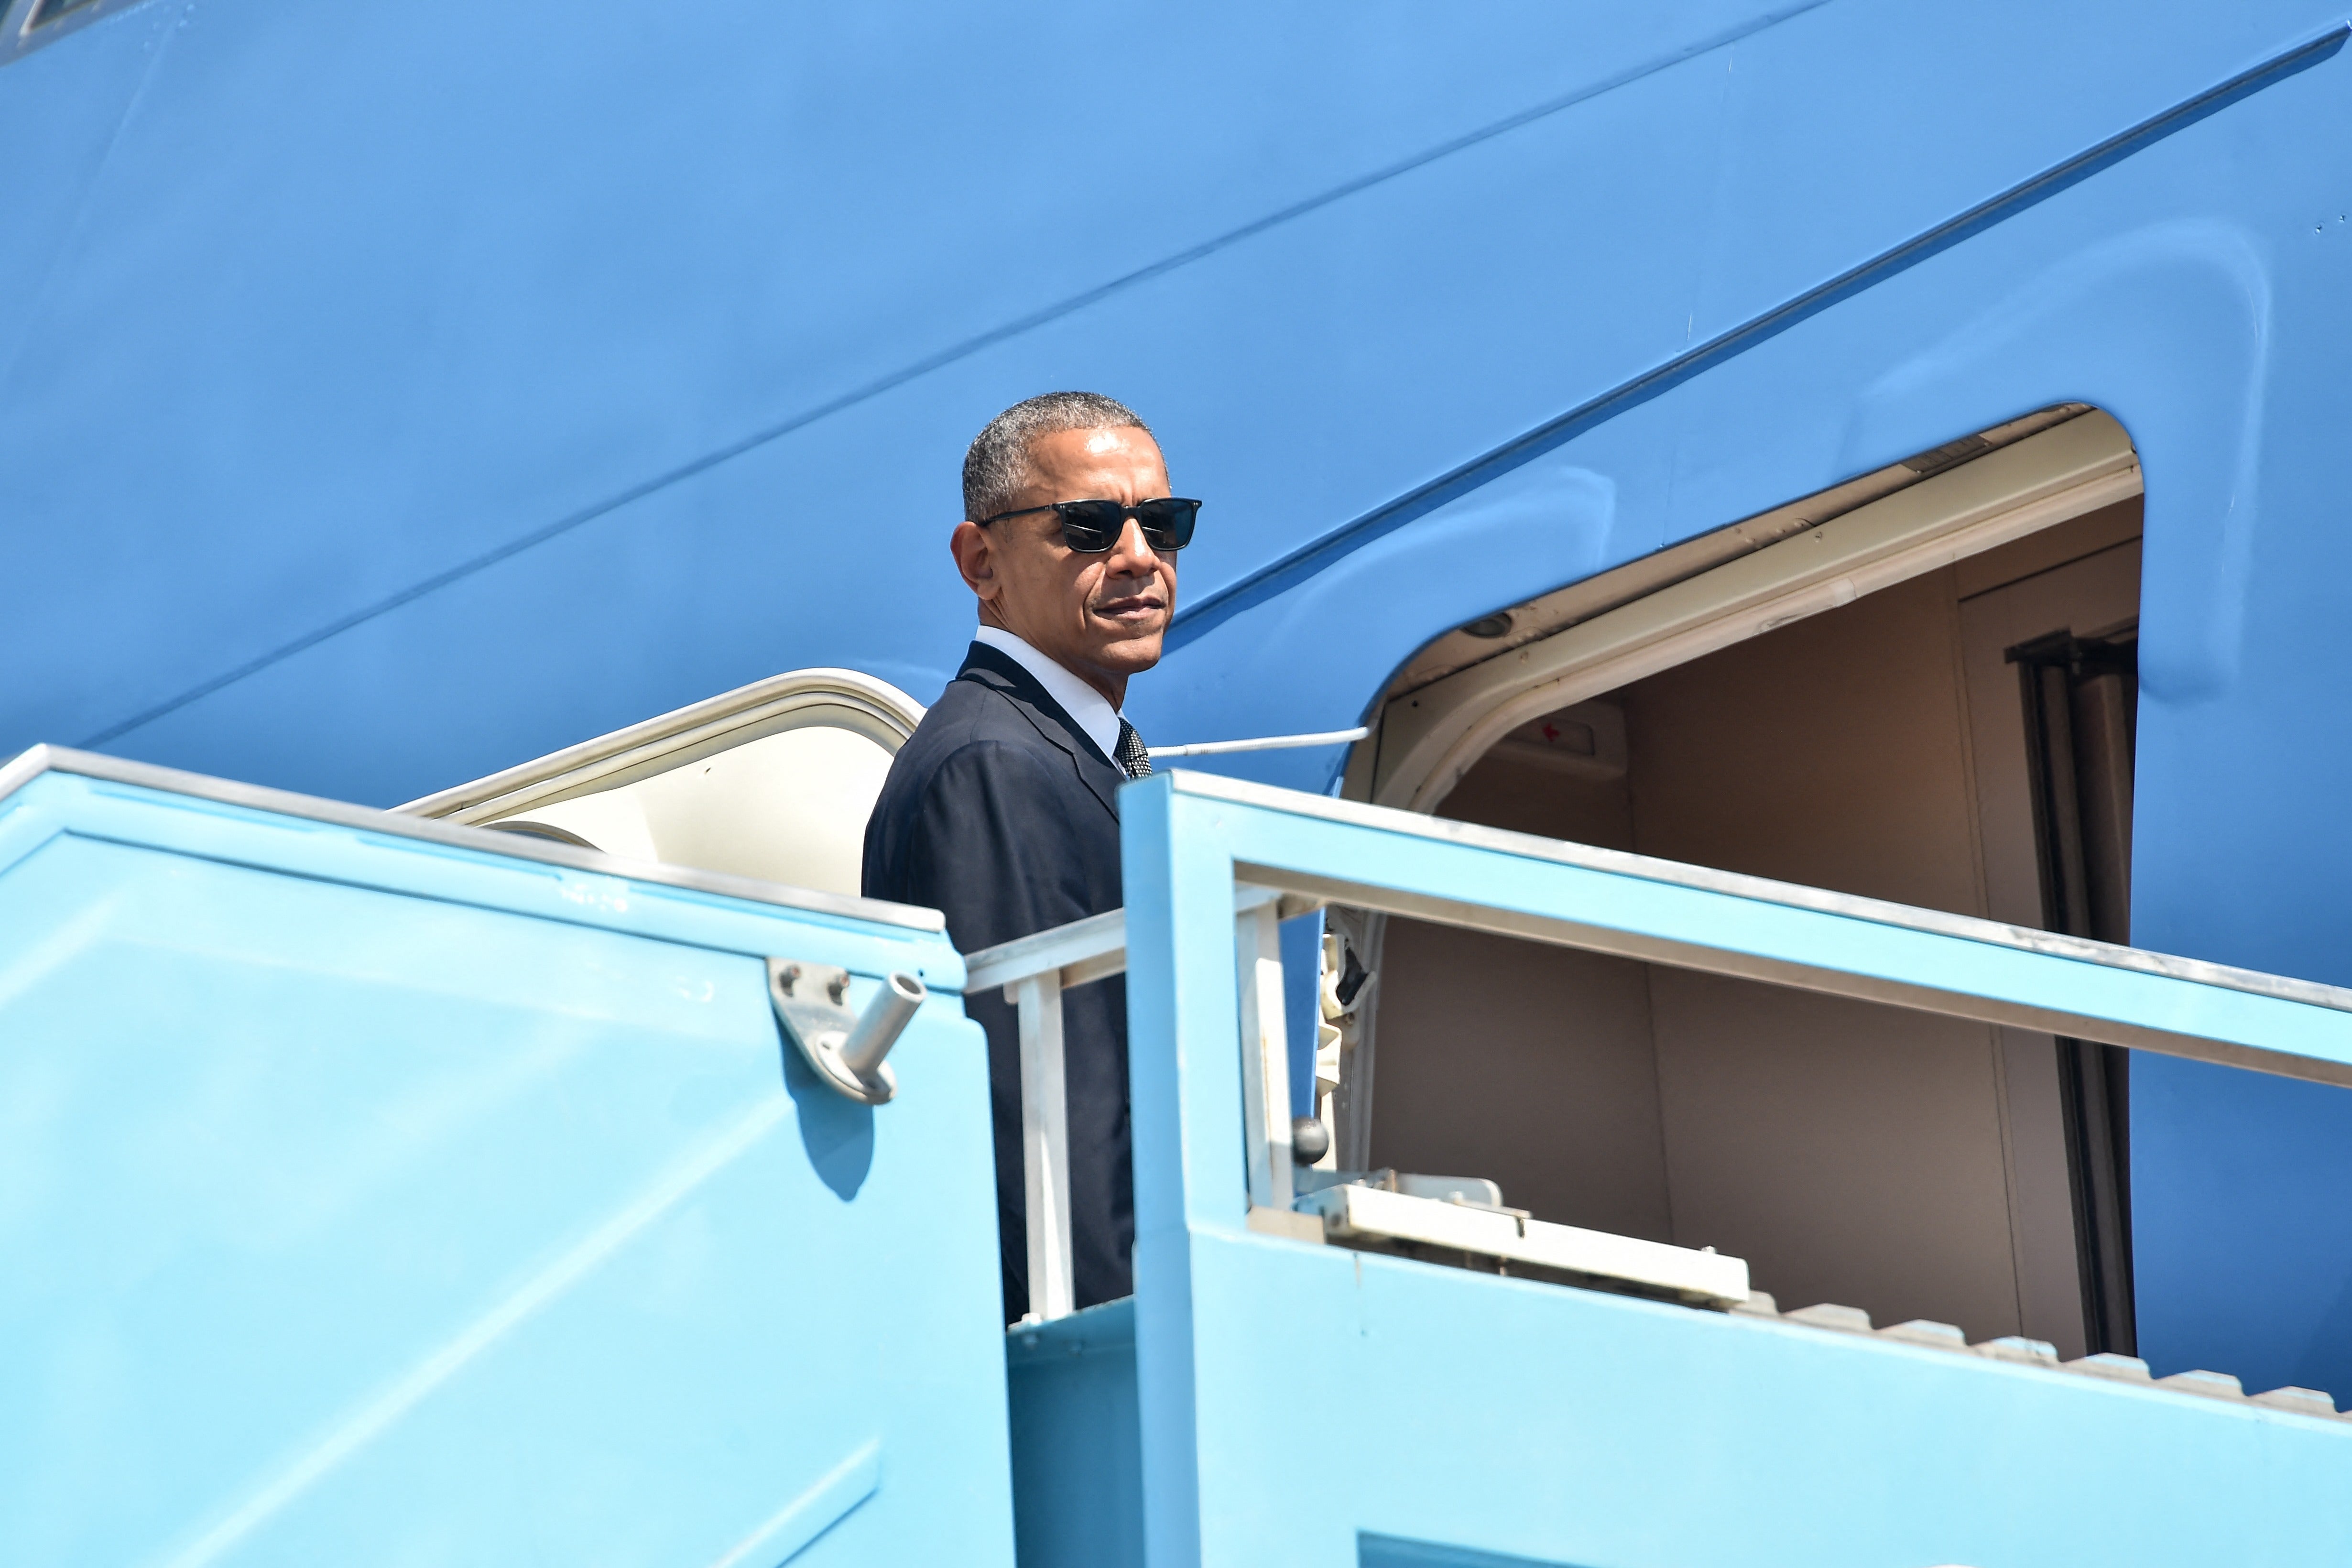 Barack Obama wears sunglasses and steps onto a plane.